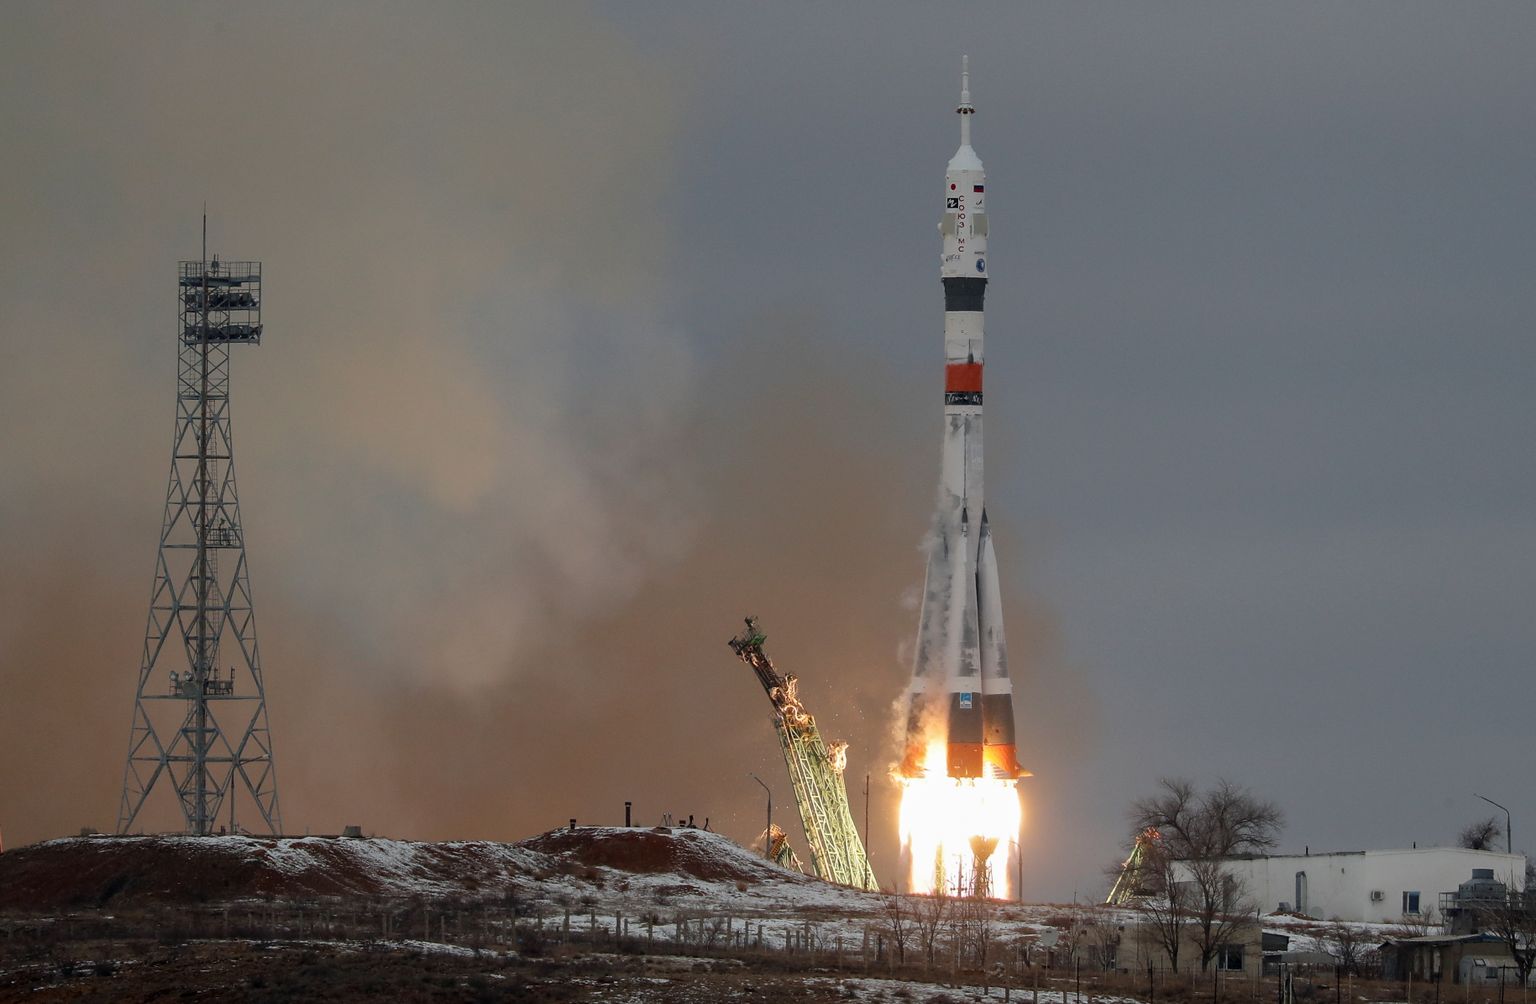 Venemaa Sojuz MS-20 kosmoselaev startis Kasahstani Baikonuri kosmosdroomilt  8. detsembril 2021 ISS-ile.  Pardal olid Venemaa kosmonaut Aleksander Misurkin,  Jaapani ettevõtja Yusaku Maezawa ja tema assistent Yozo Hirano